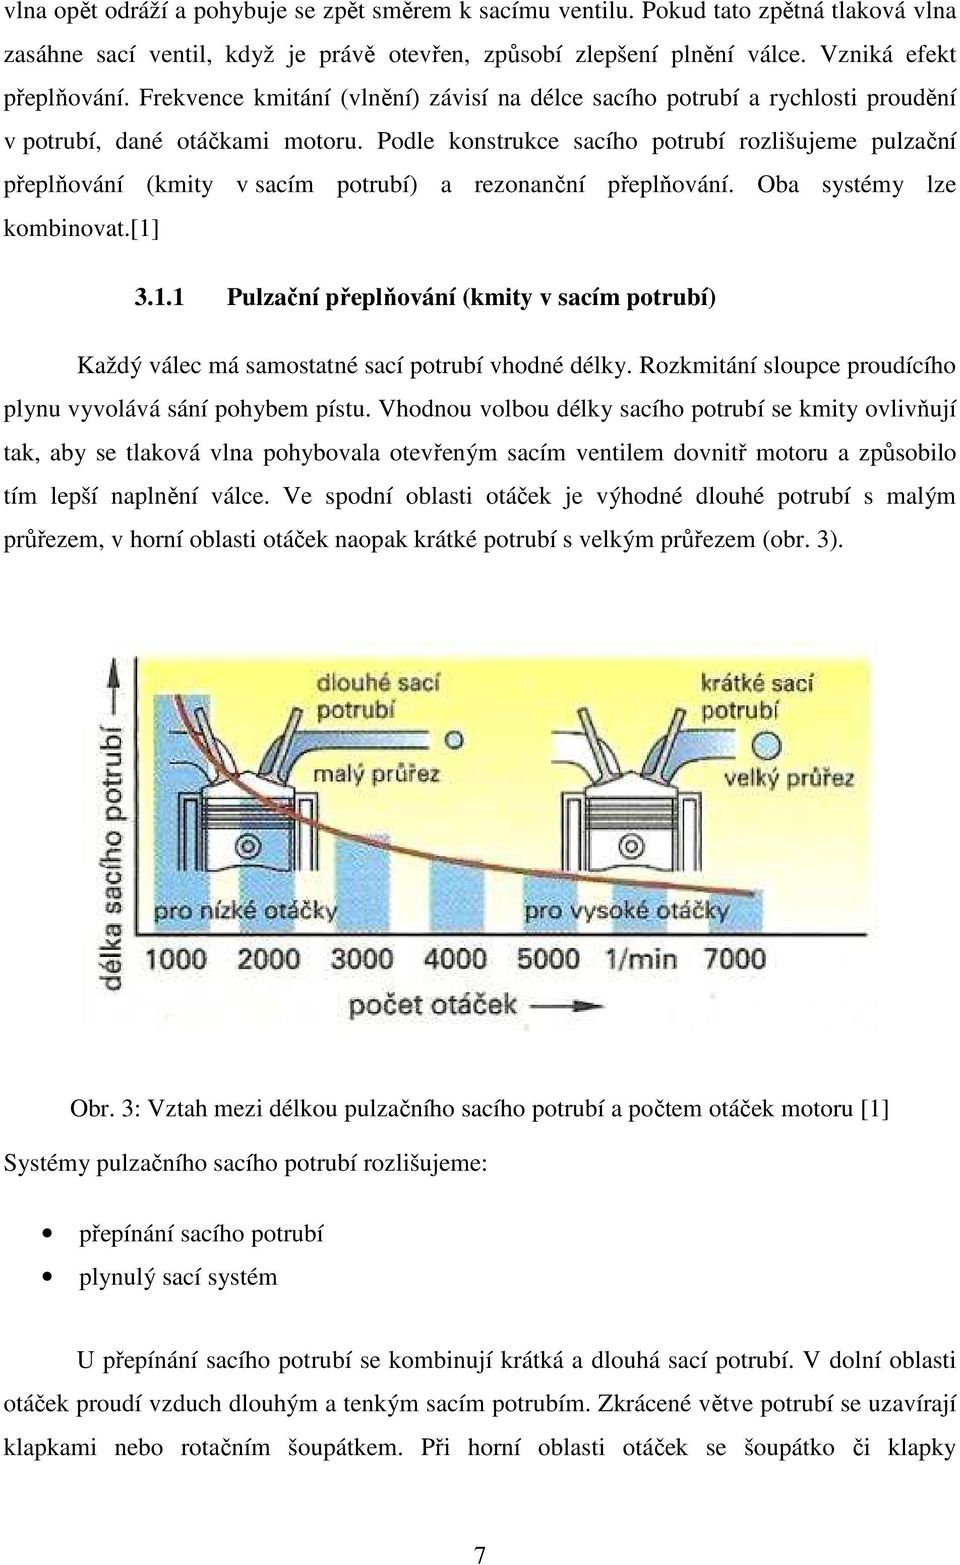 Podle konstrukce sacího potrubí rozlišujee pulzační přeplňování (kity v sací potrubí) a rezonanční přeplňování. Oba systéy lze kobinovat.[1]